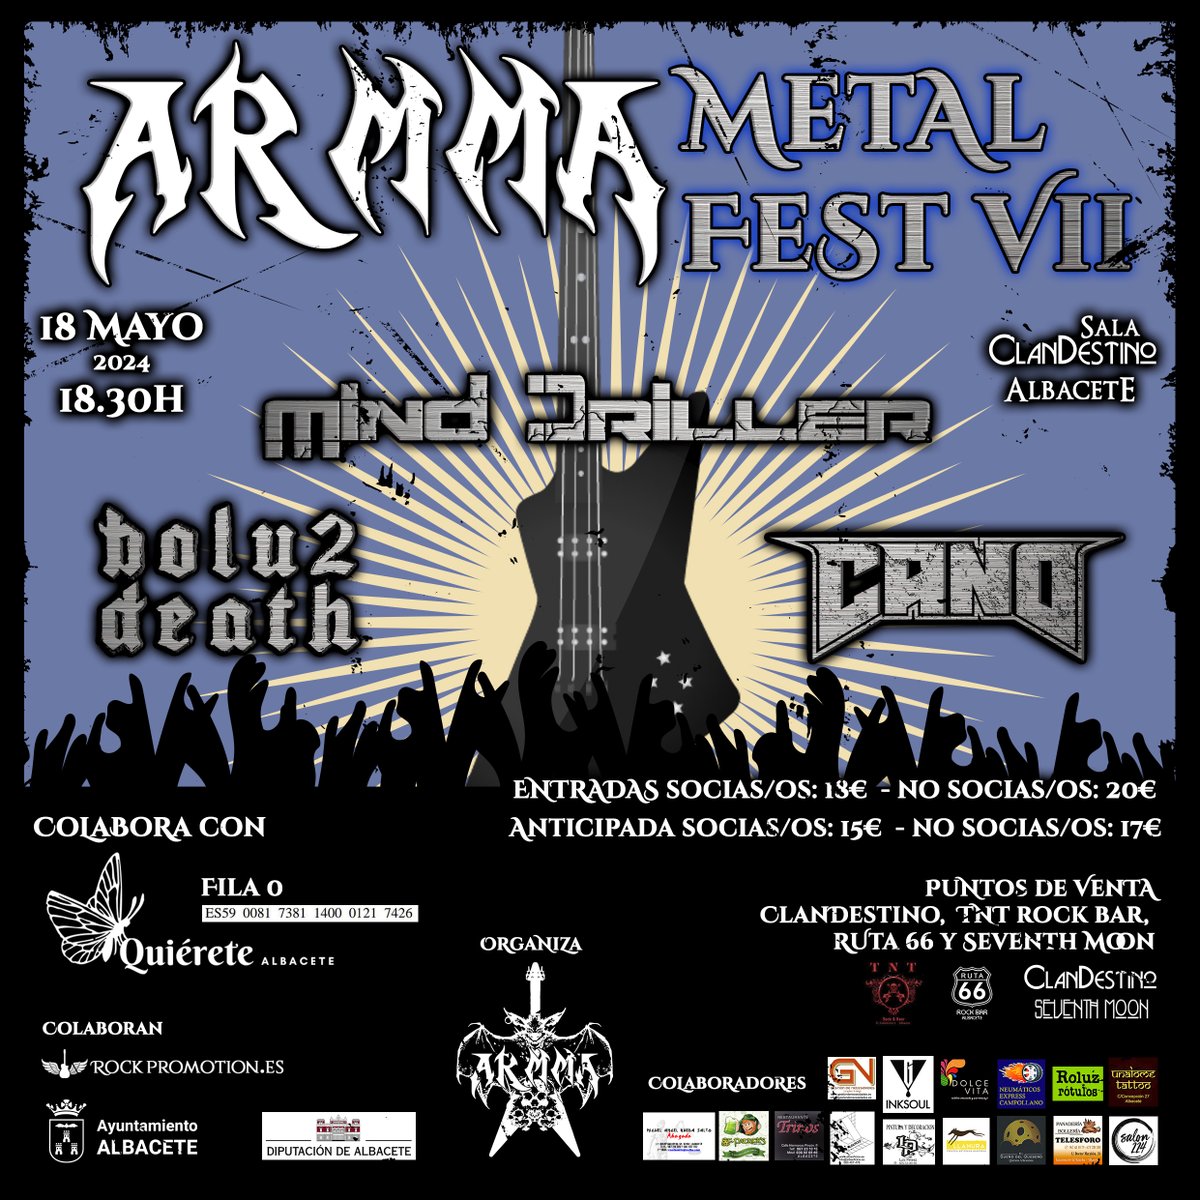 ARMMA Metal Fest VII hoy en #Albacete #Metal
conciertosalbacete.blogspot.com/2024/05/armma-…